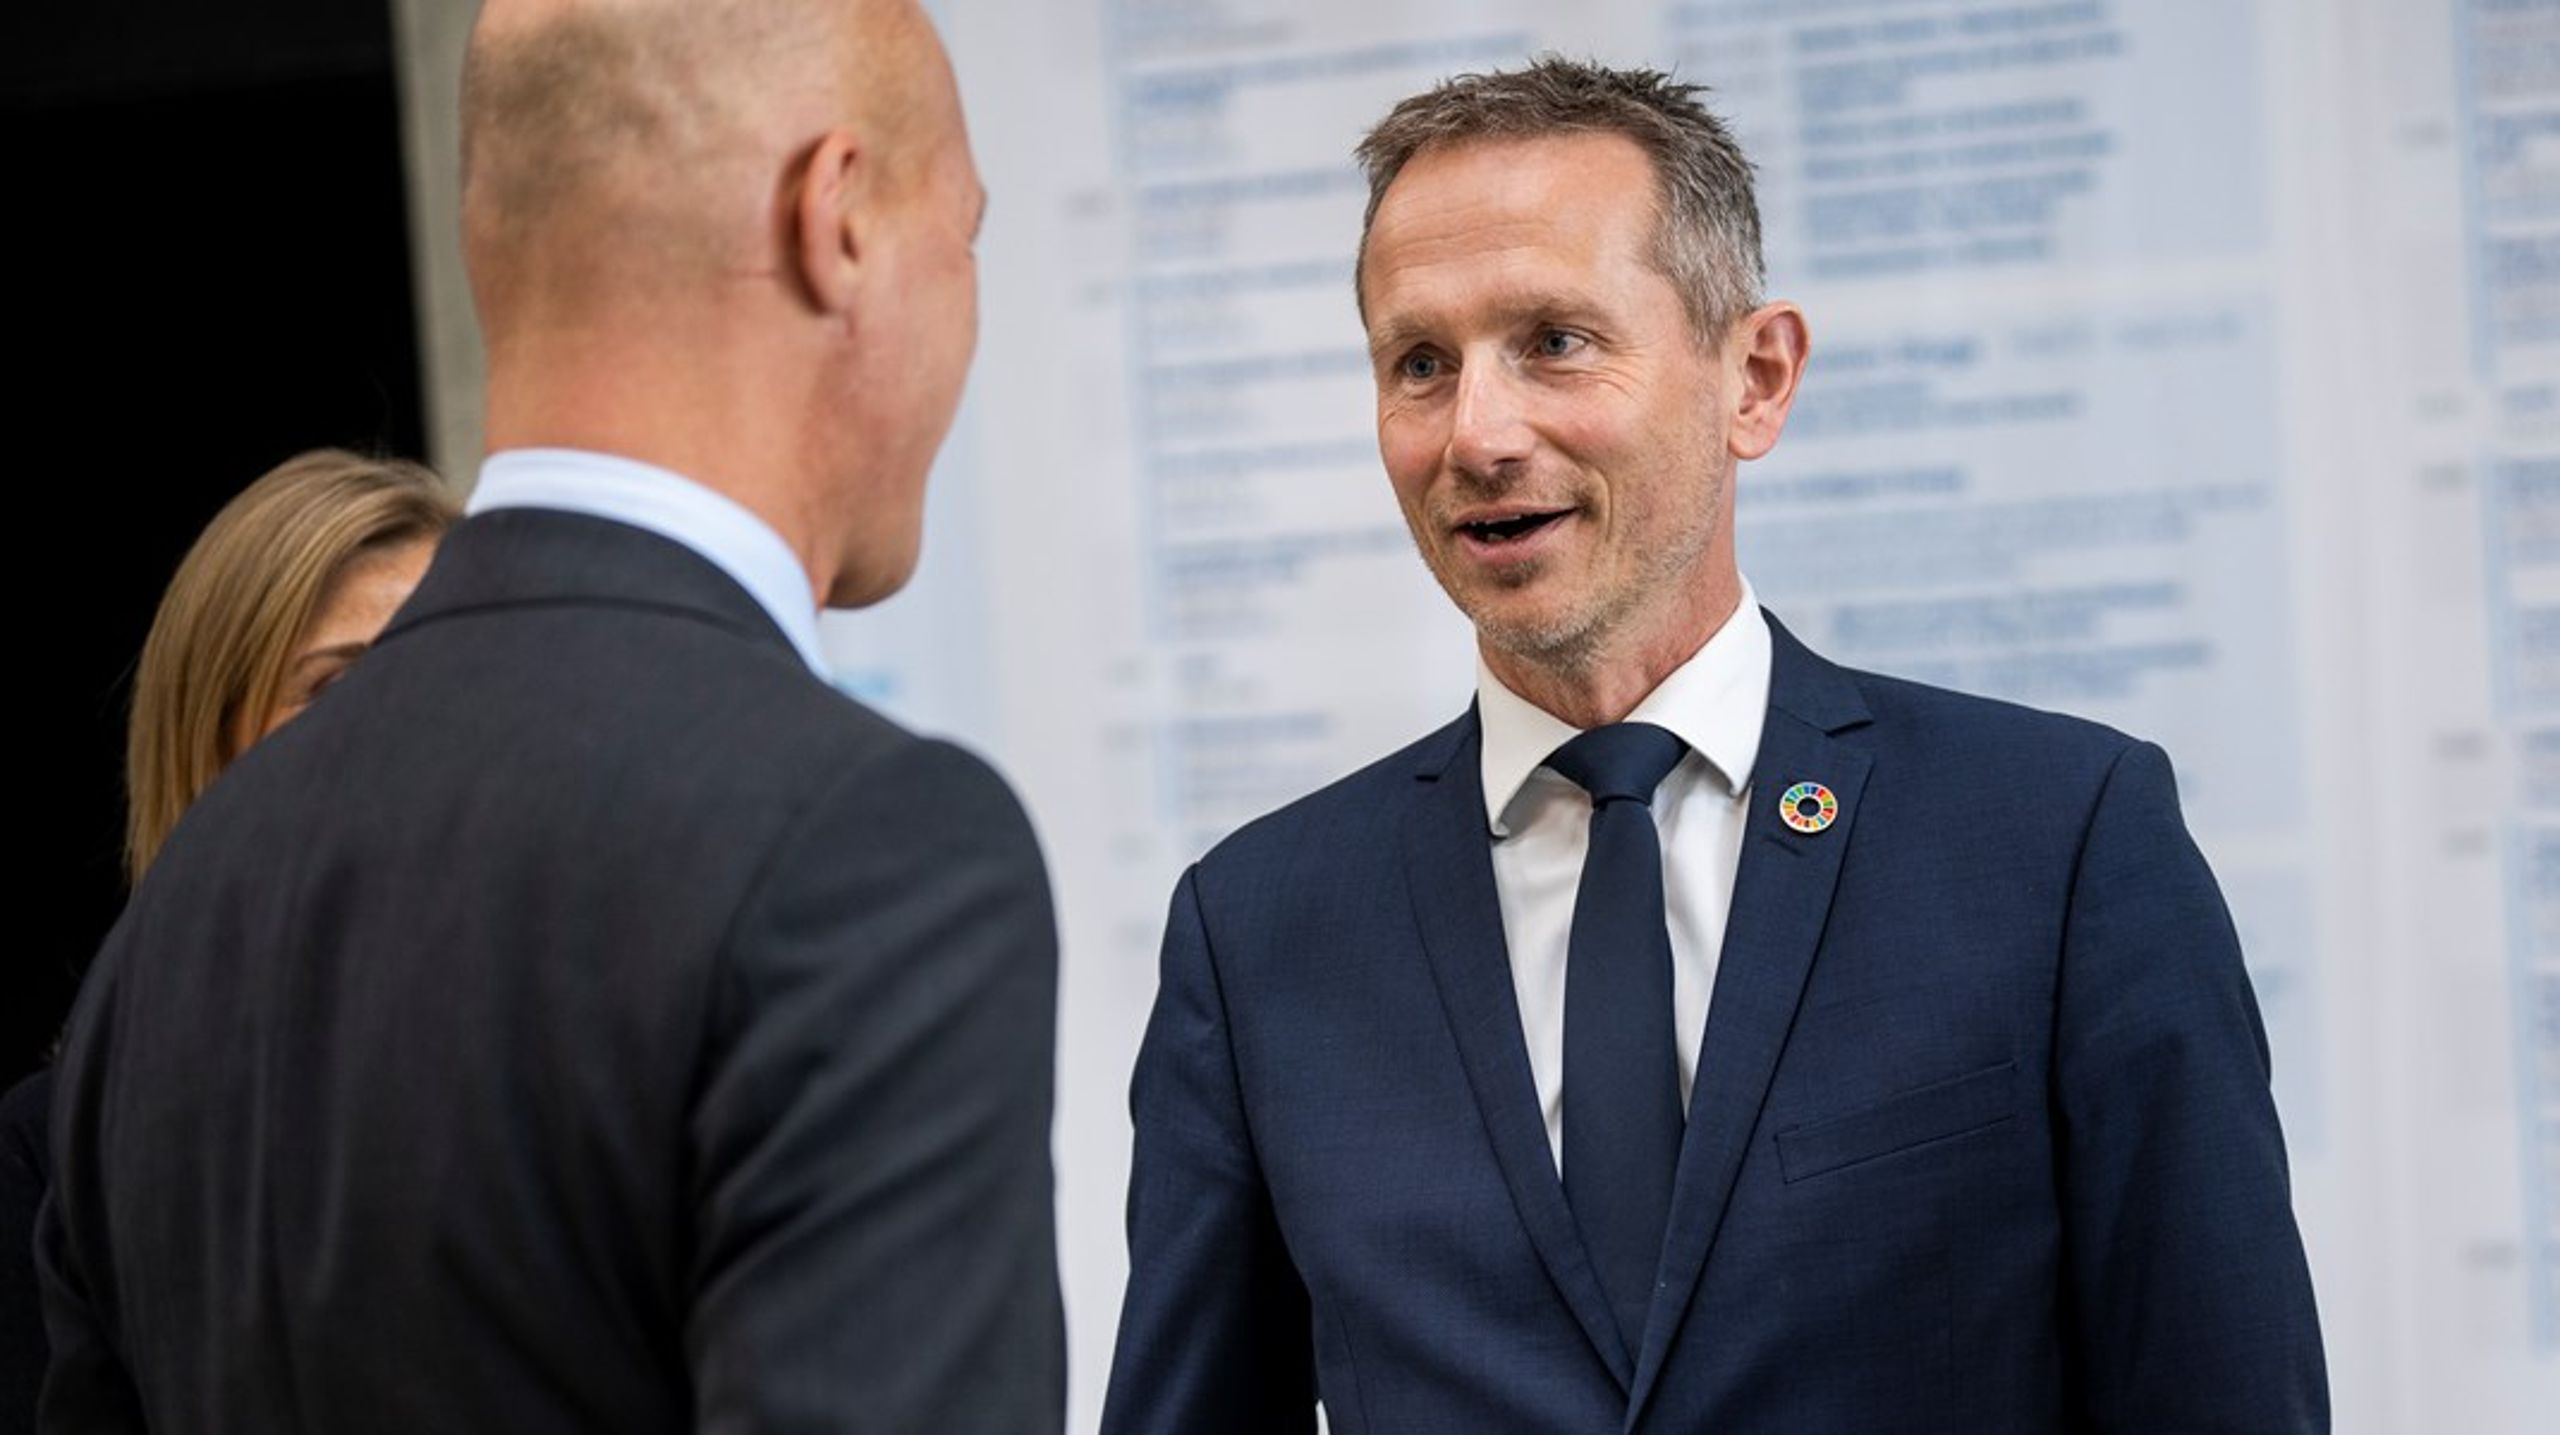 "CO2-fangst bliver et meget vigtigt industrieventyr for Danmark, som både skal bringe os i mål med reduktionen på 70 procent," siger Kristian Jensen, der er administrerende direktør hos Green Power Denmark.